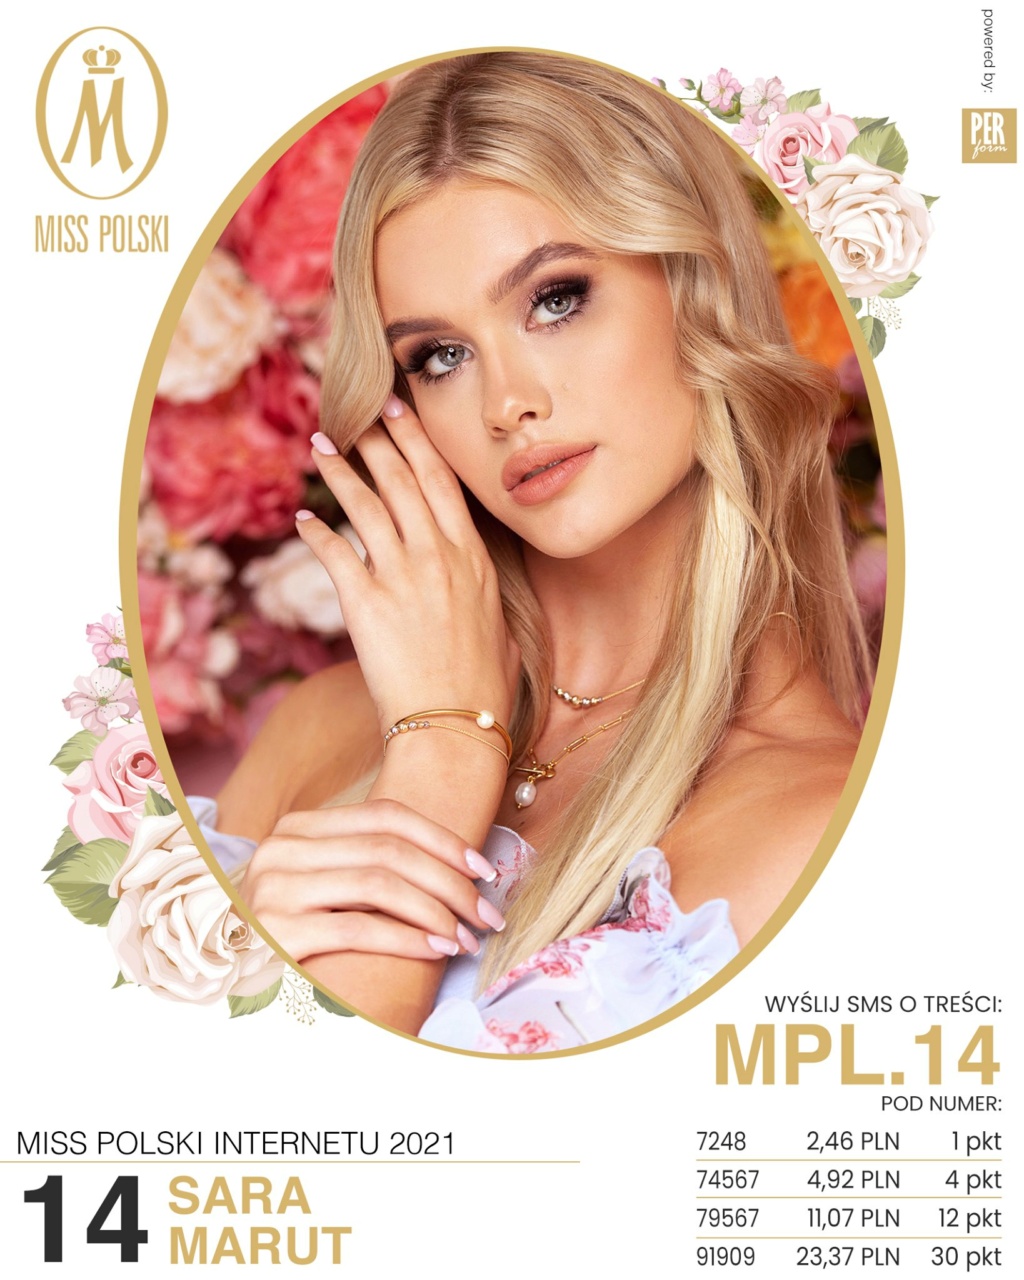 Road to Miss Polski 2021 is Agata Wdowiak from Łodź - Page 2 23492712